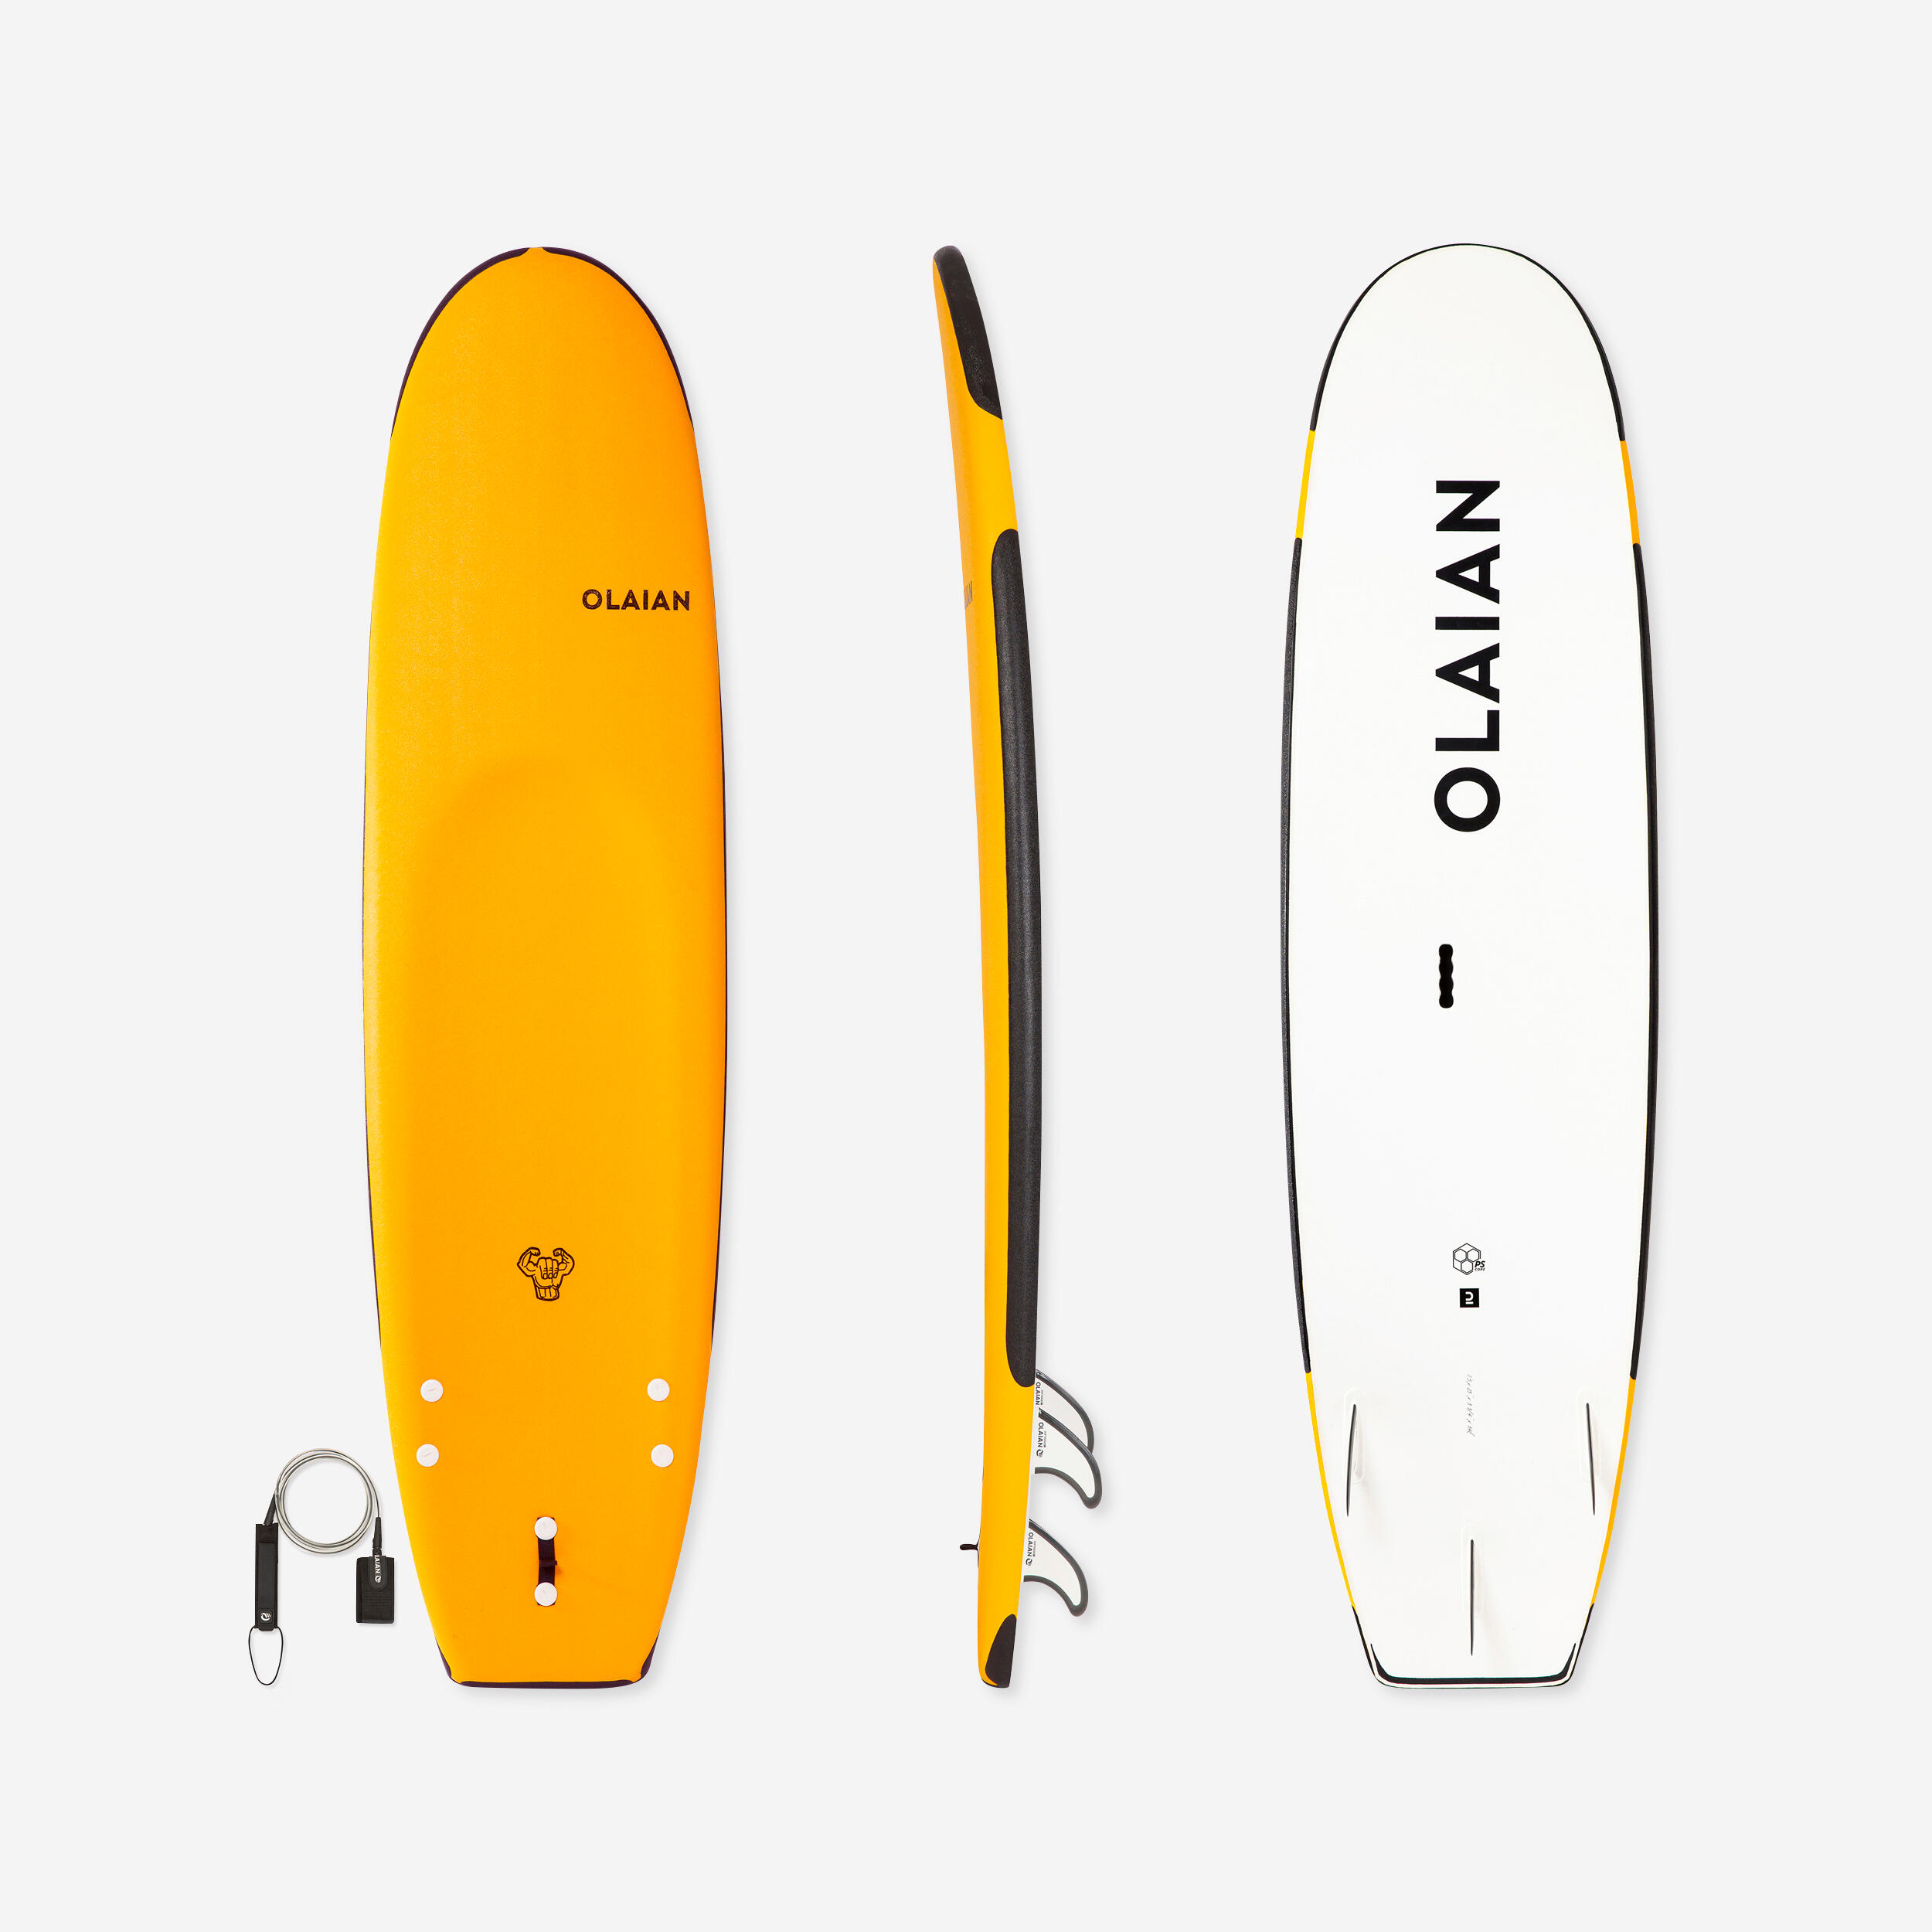 84 L Reinforced Foam Surfboard with Leash - 100 Yellow - OLAIAN